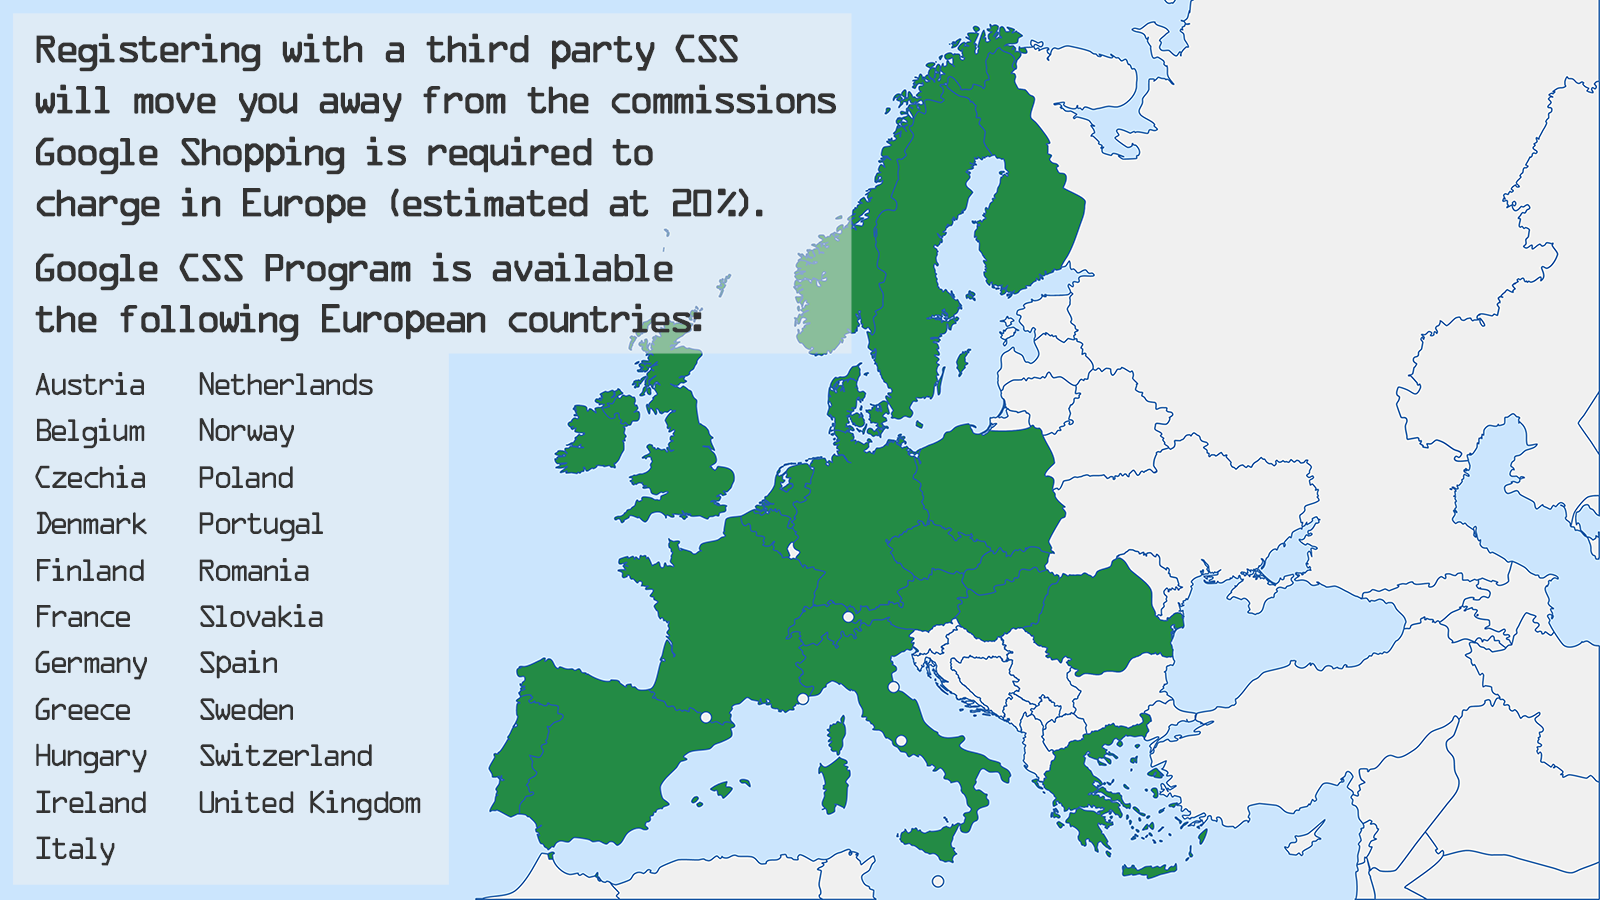 Google CSS计划在21个欧洲国家可用